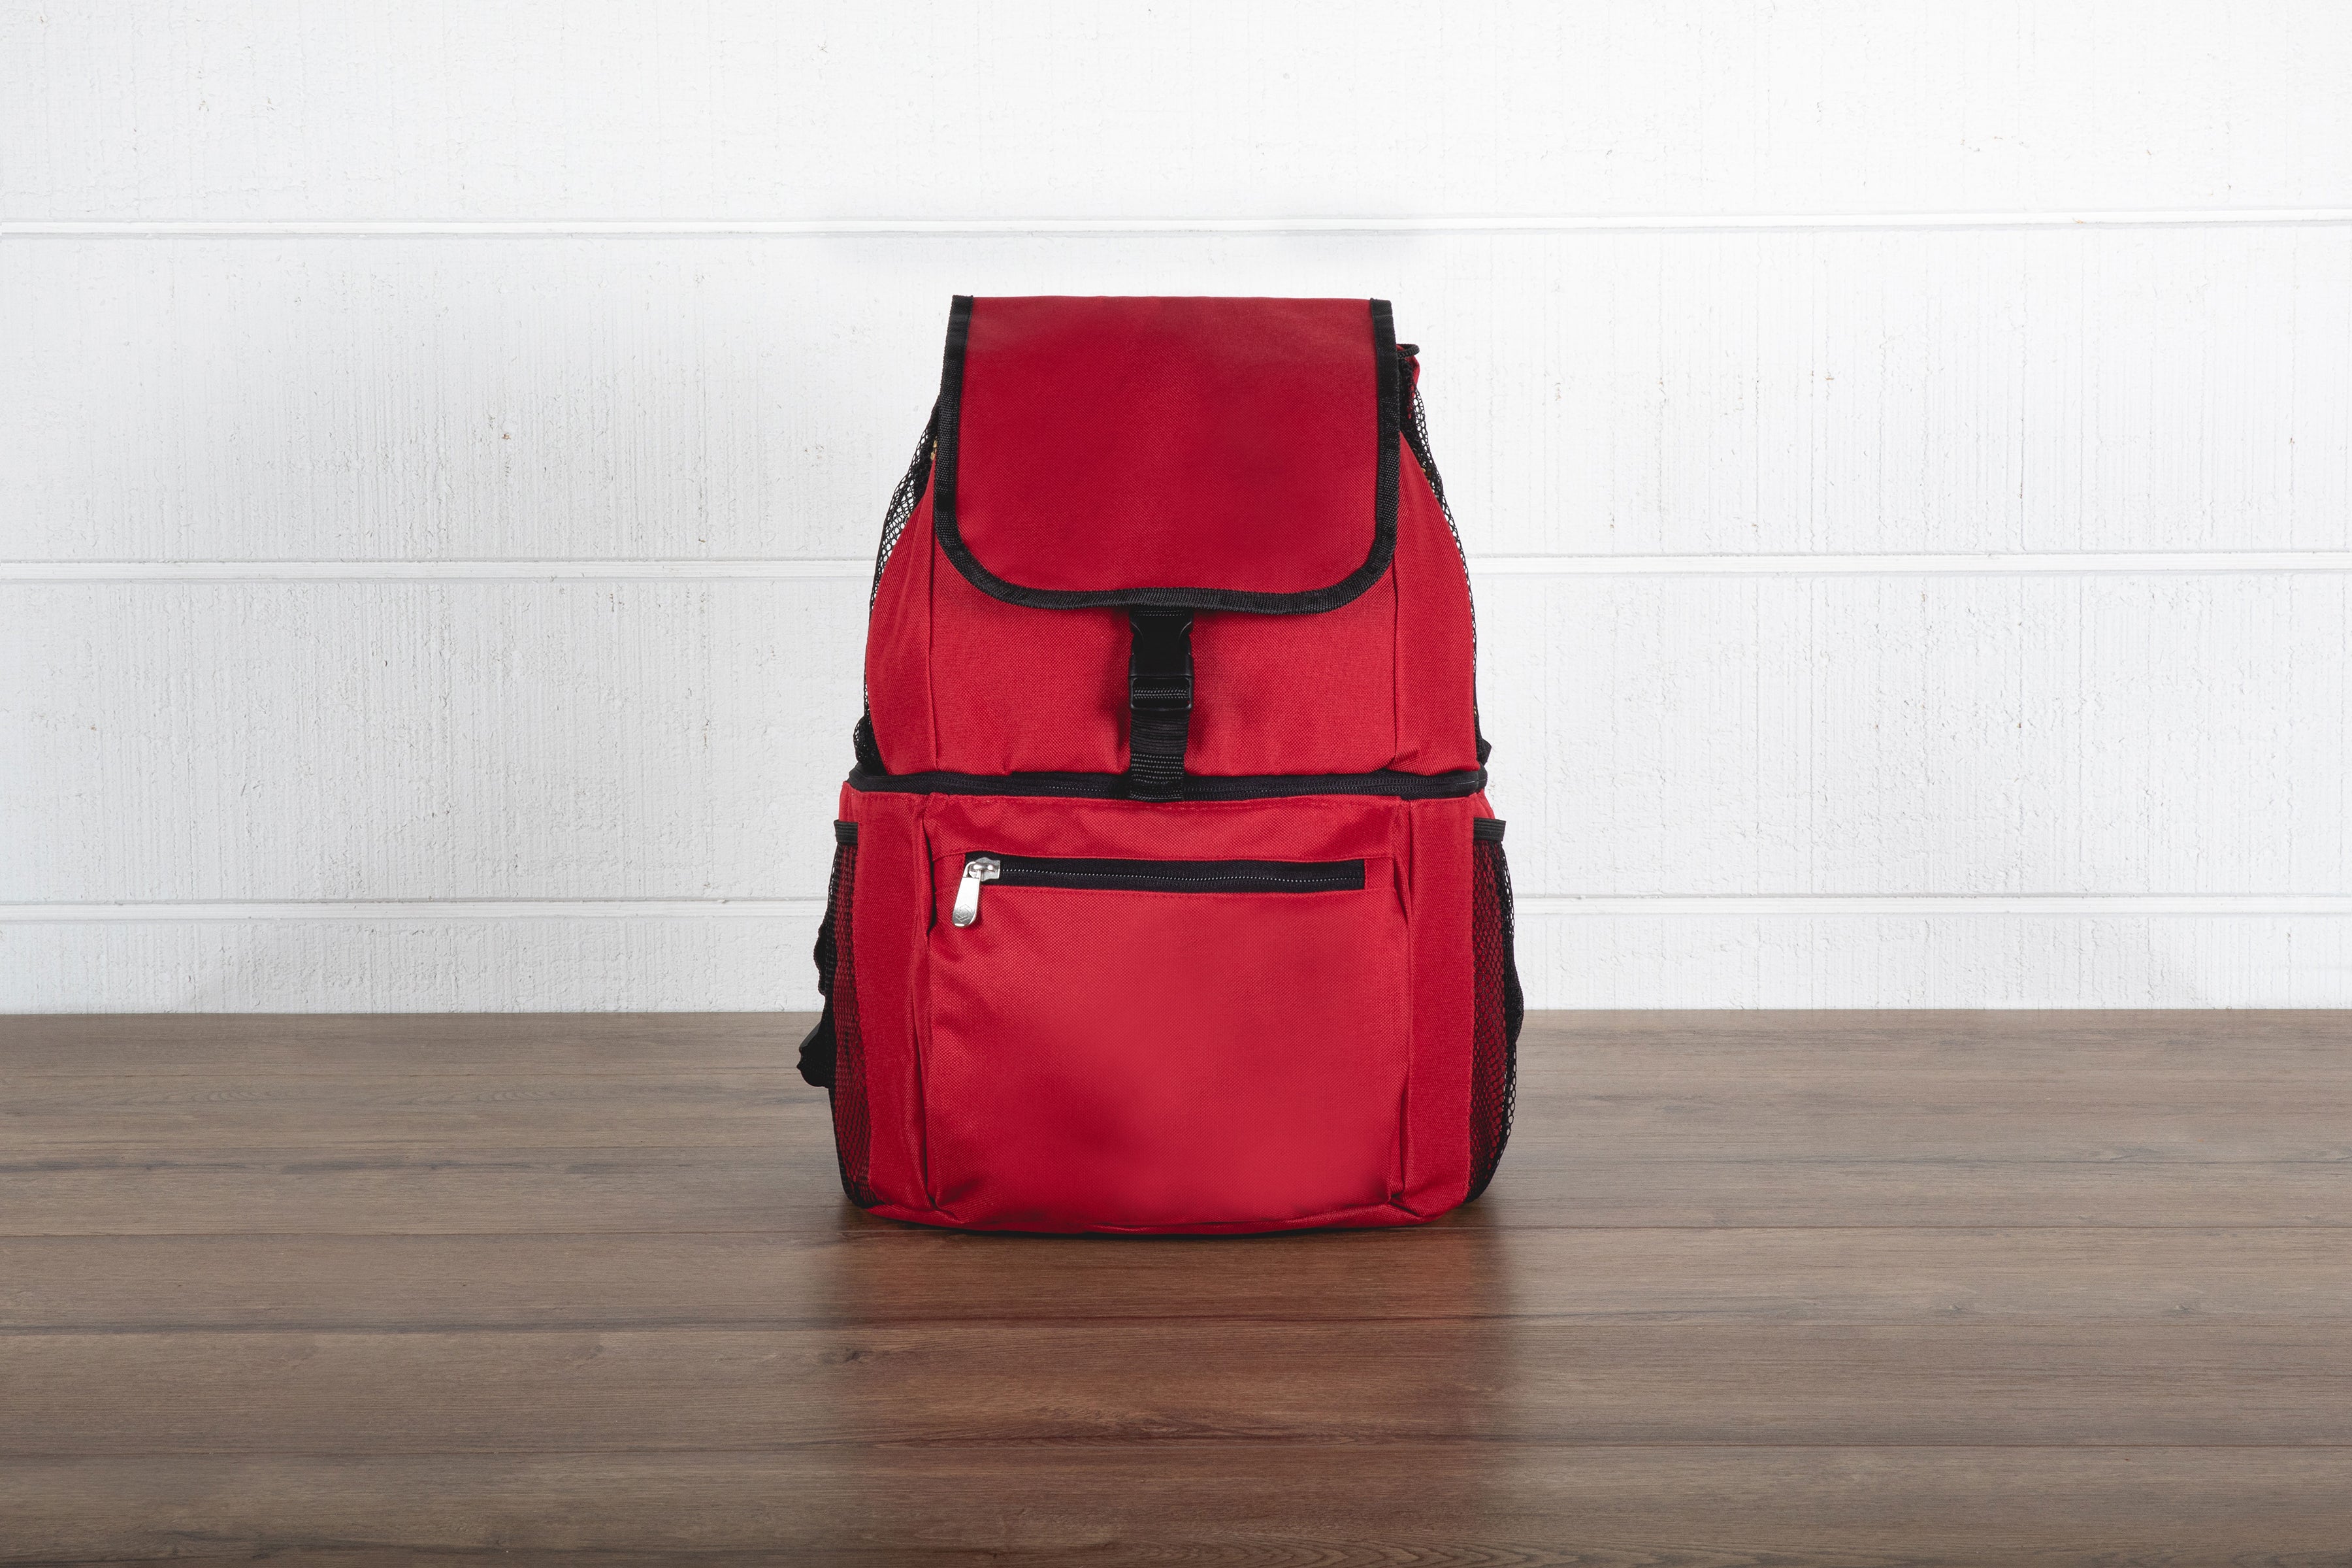 St. Louis Cardinals - Zuma Backpack Cooler